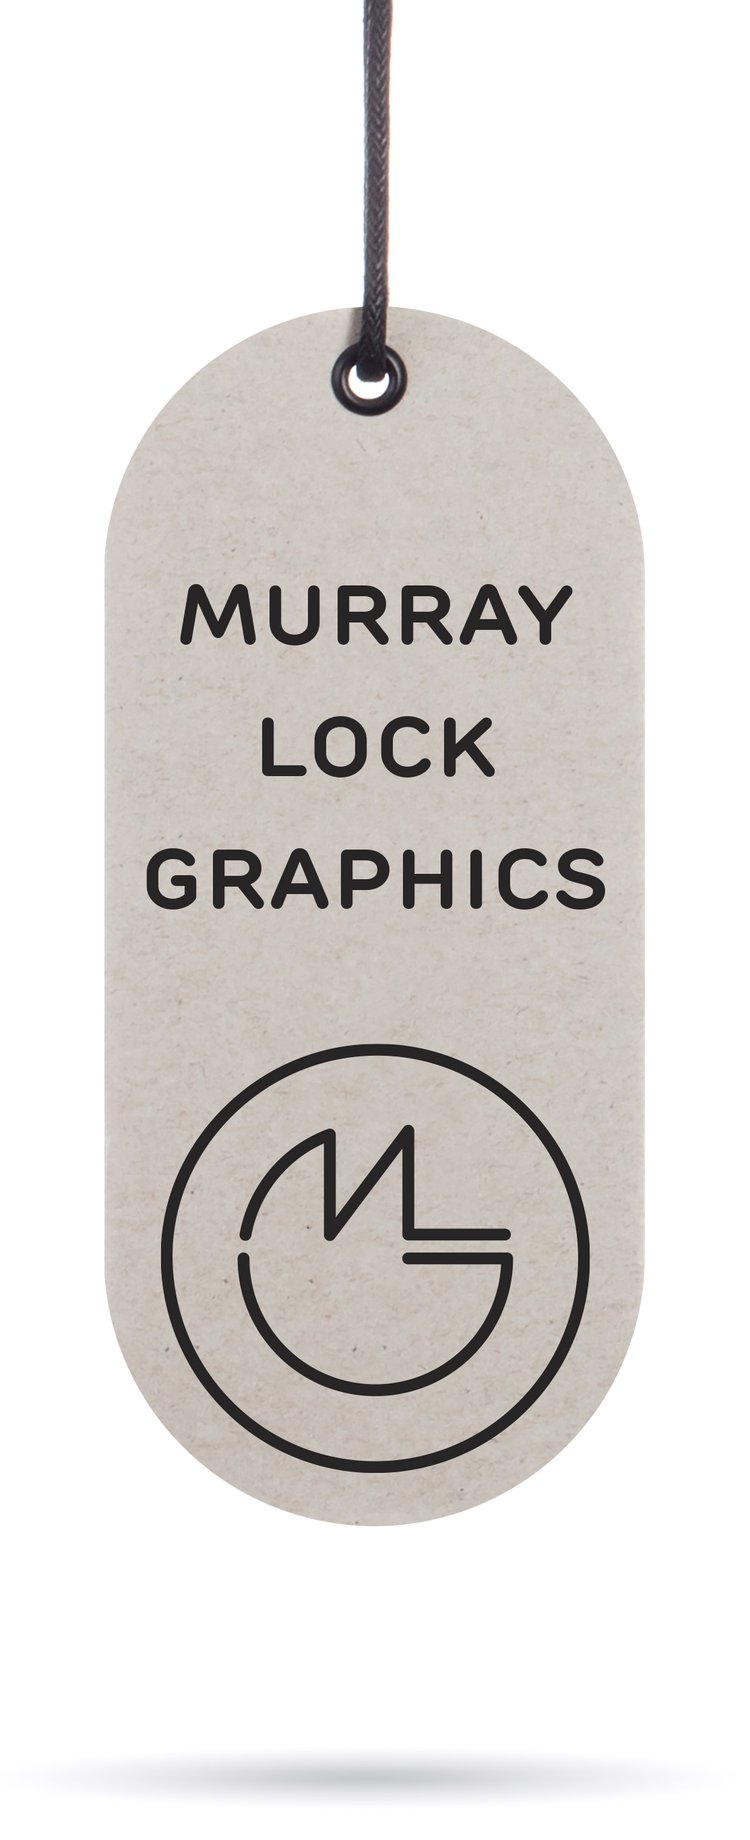 Murray Lock Graphics